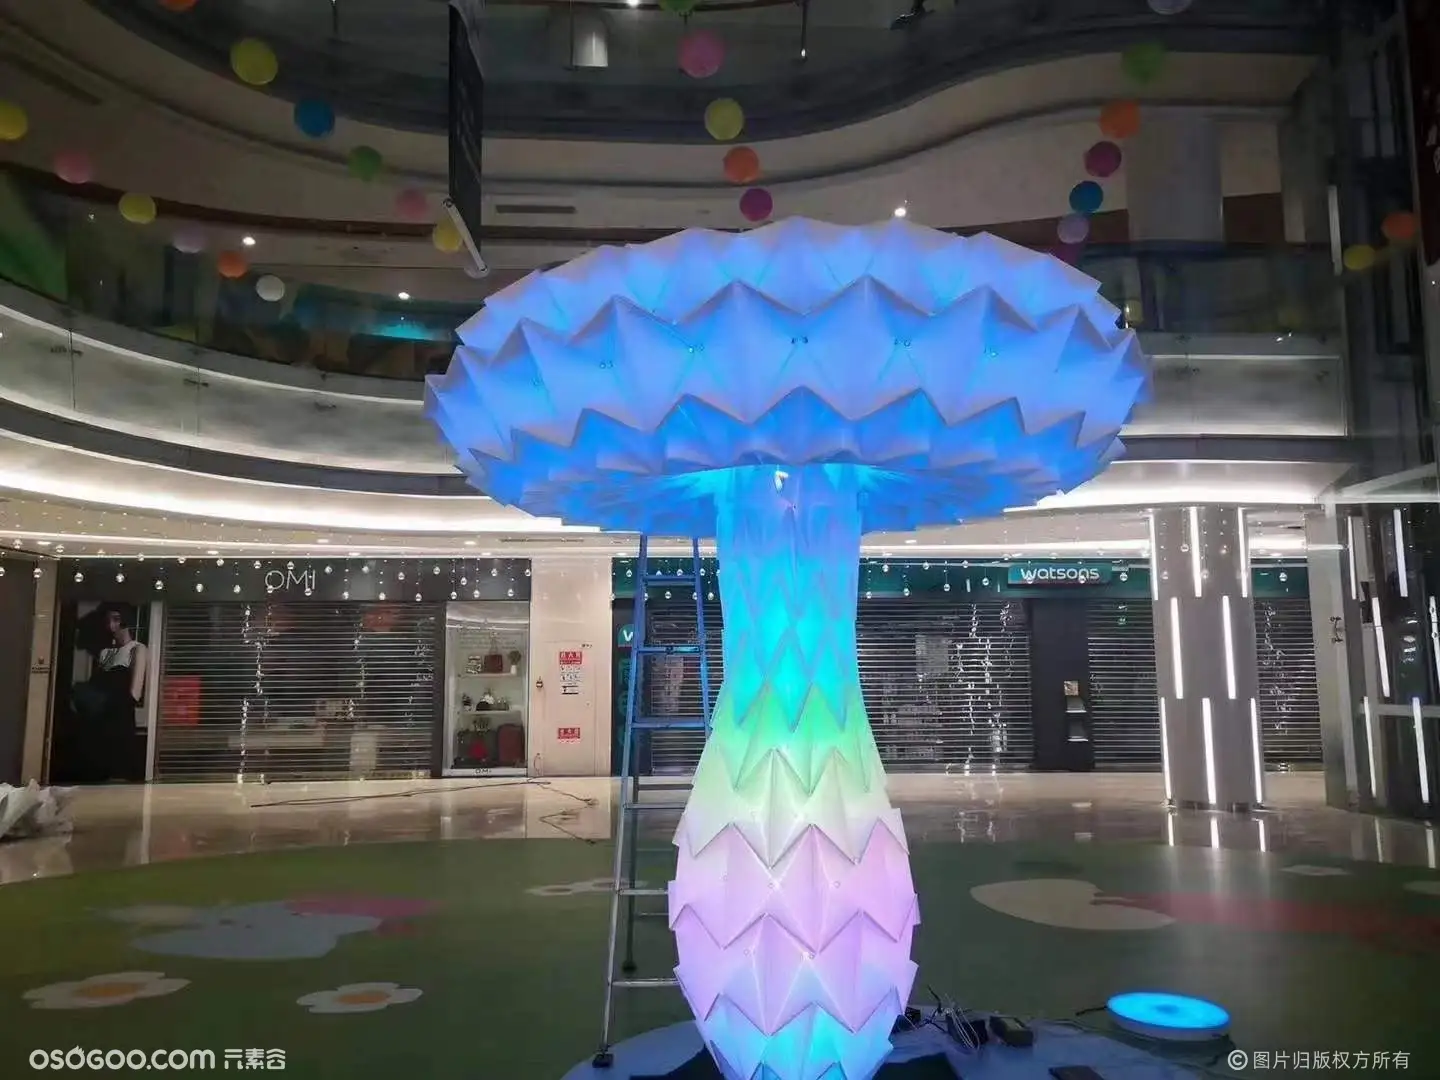 蘑菇树灯光装置 蘑菇树互动美陈装置 灯光节用品